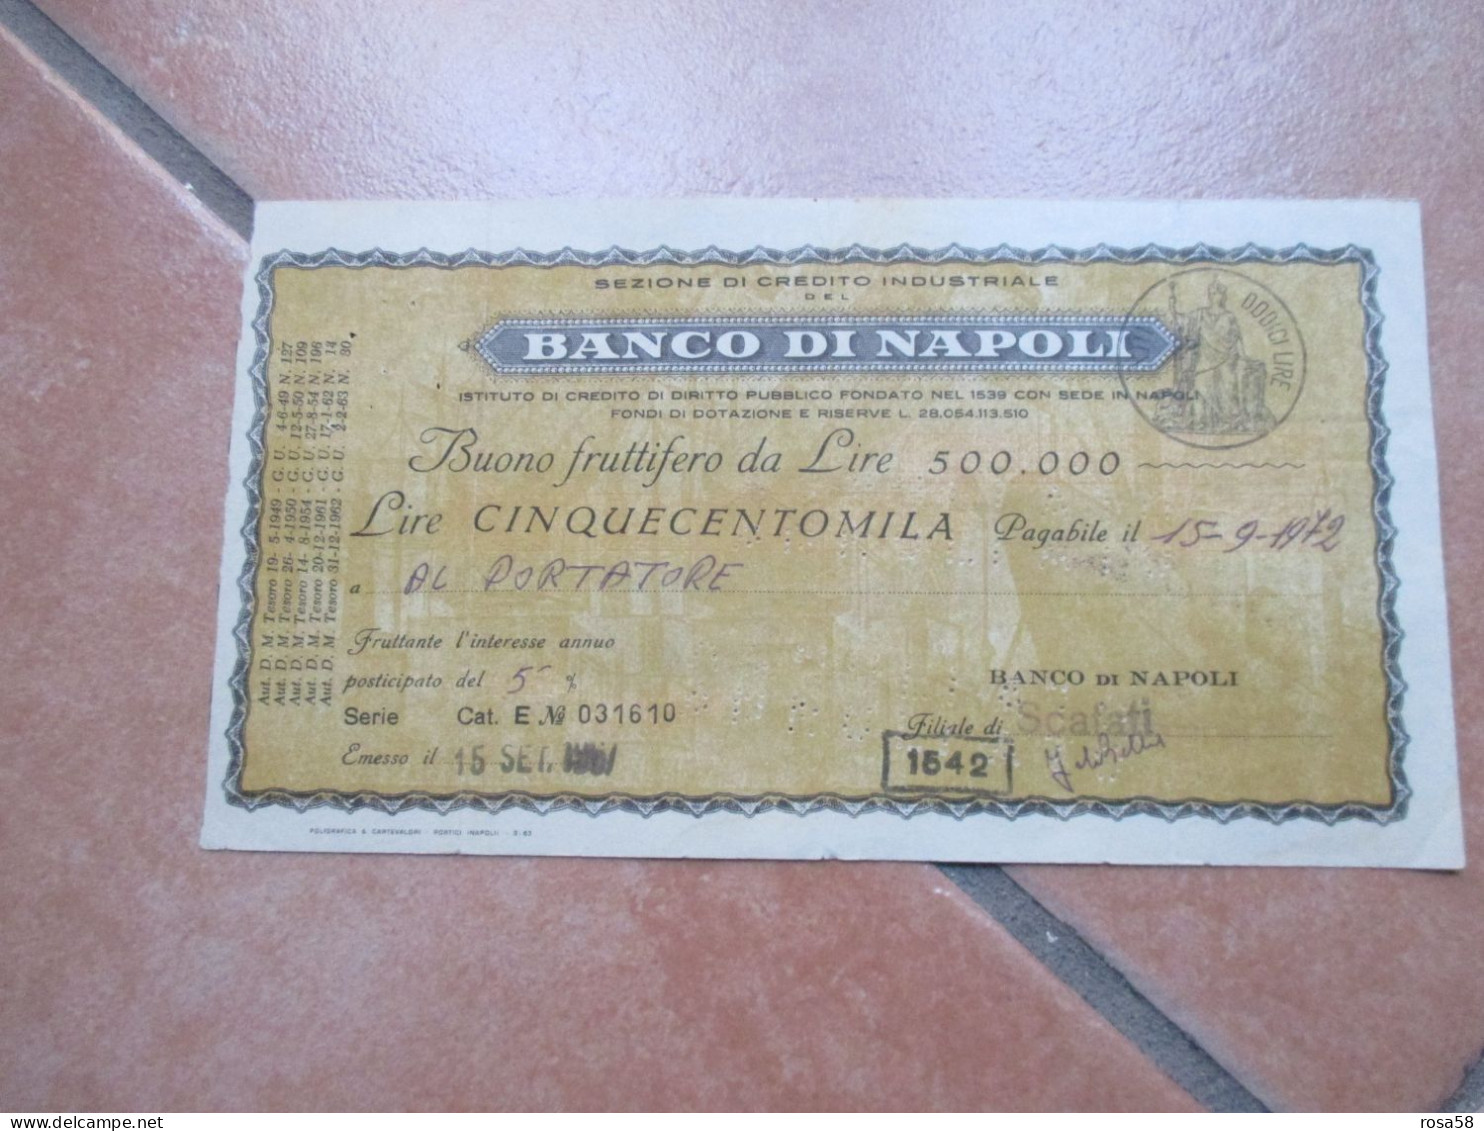 1967 BANCO Di NAPOLI Buono Fruttifero Da Lire 500.000 Interesse Annuo Posticipato Del 5% - Bank & Insurance